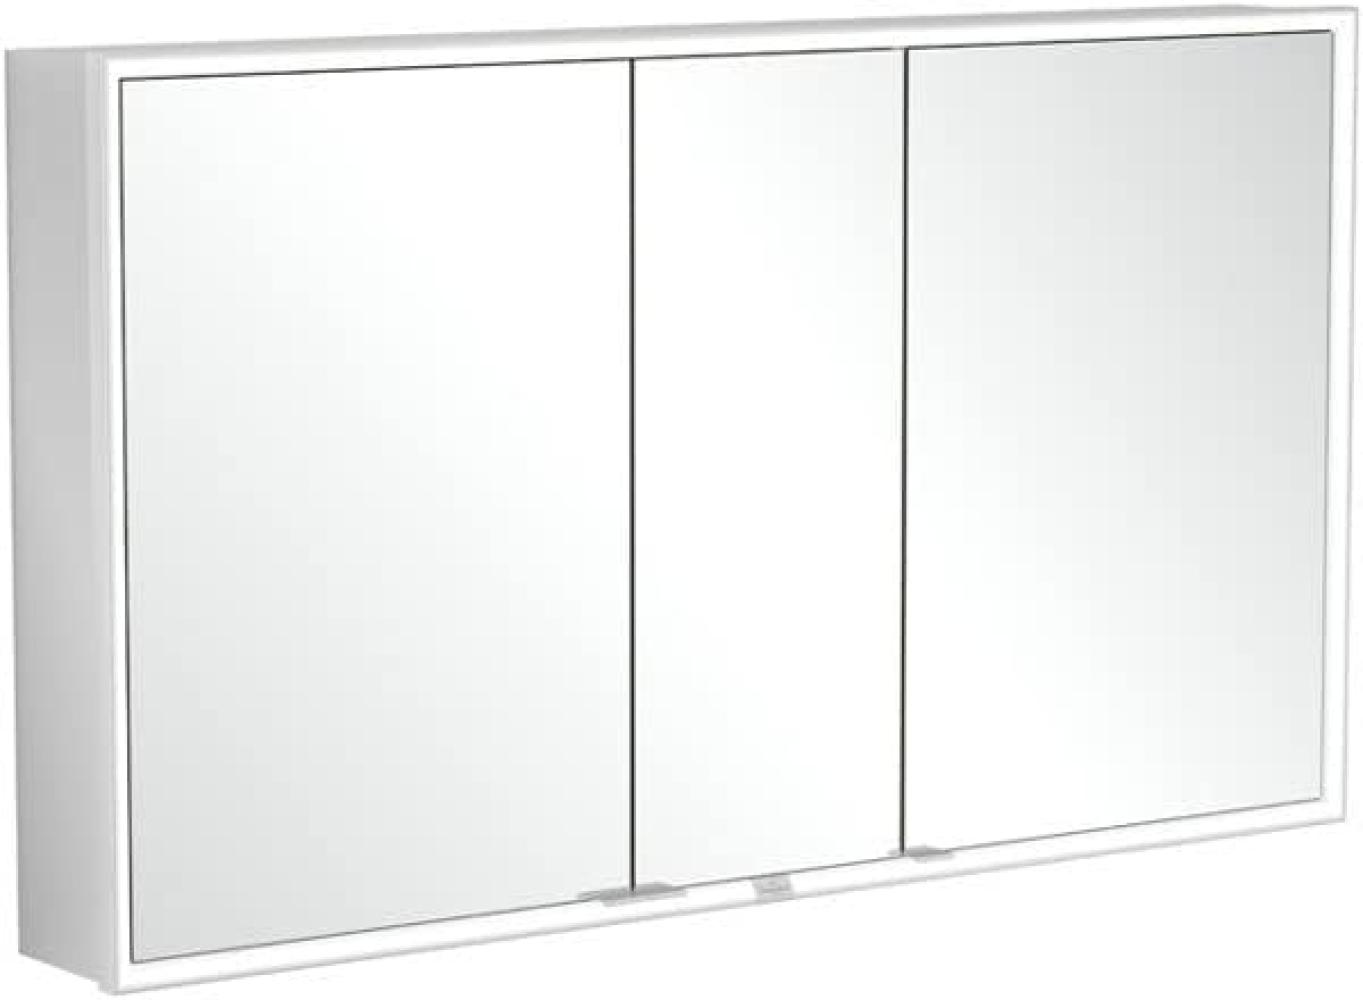 Villeroy & Boch My View Now, Spiegelschrank für Wandeinbau mit Beleuchtung, 1300x750x167,5 mm, mit Sensordimmer, 3 Türen, A45613 - A4561300 Bild 1